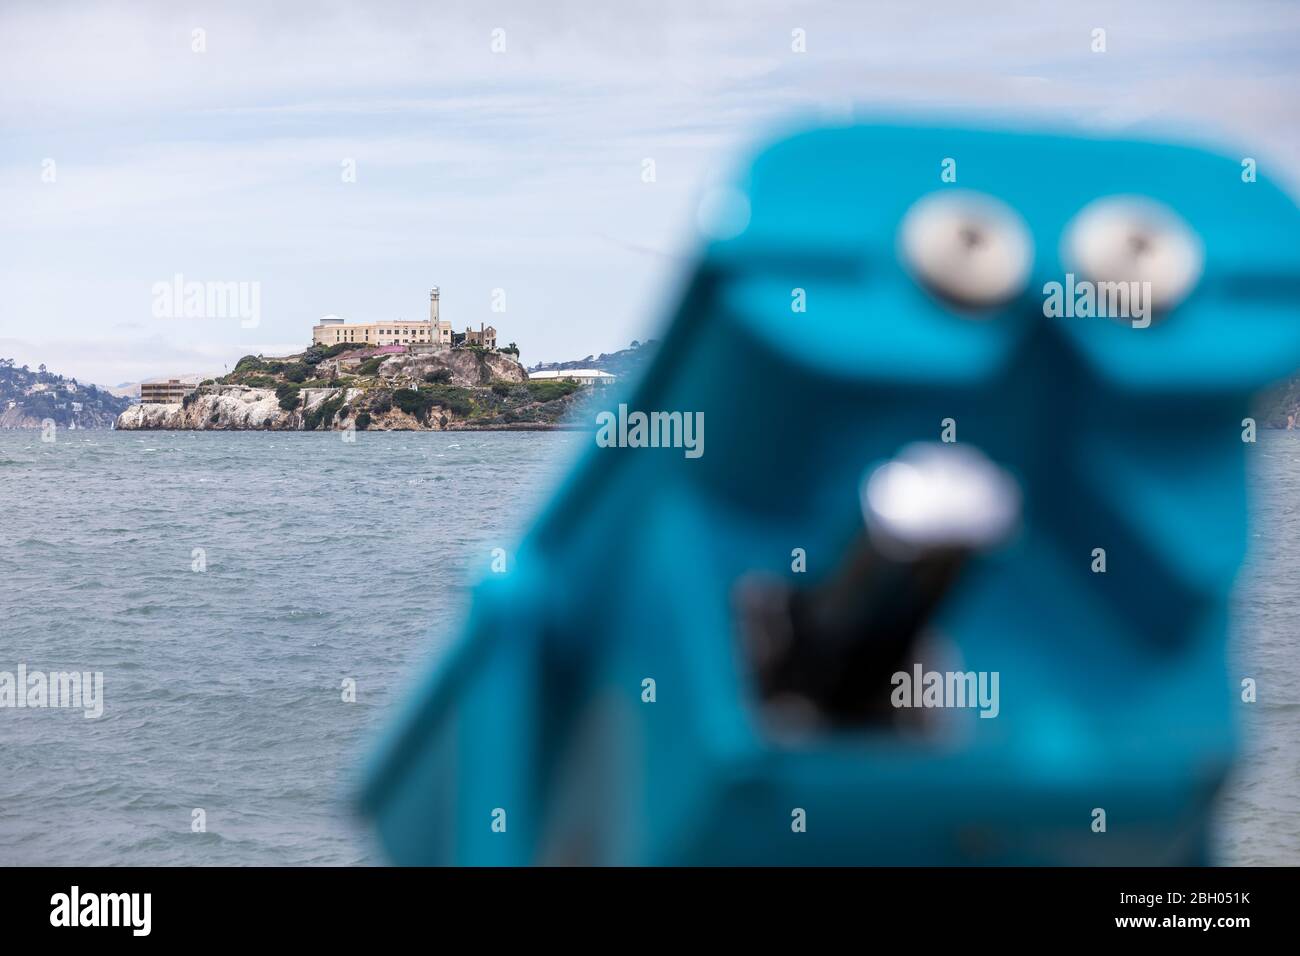 Nahaufnahme der Insel Alcatraz in der Bucht von San Francisco, mit einem blauen Münzfernglas im Vordergrund Stockfoto